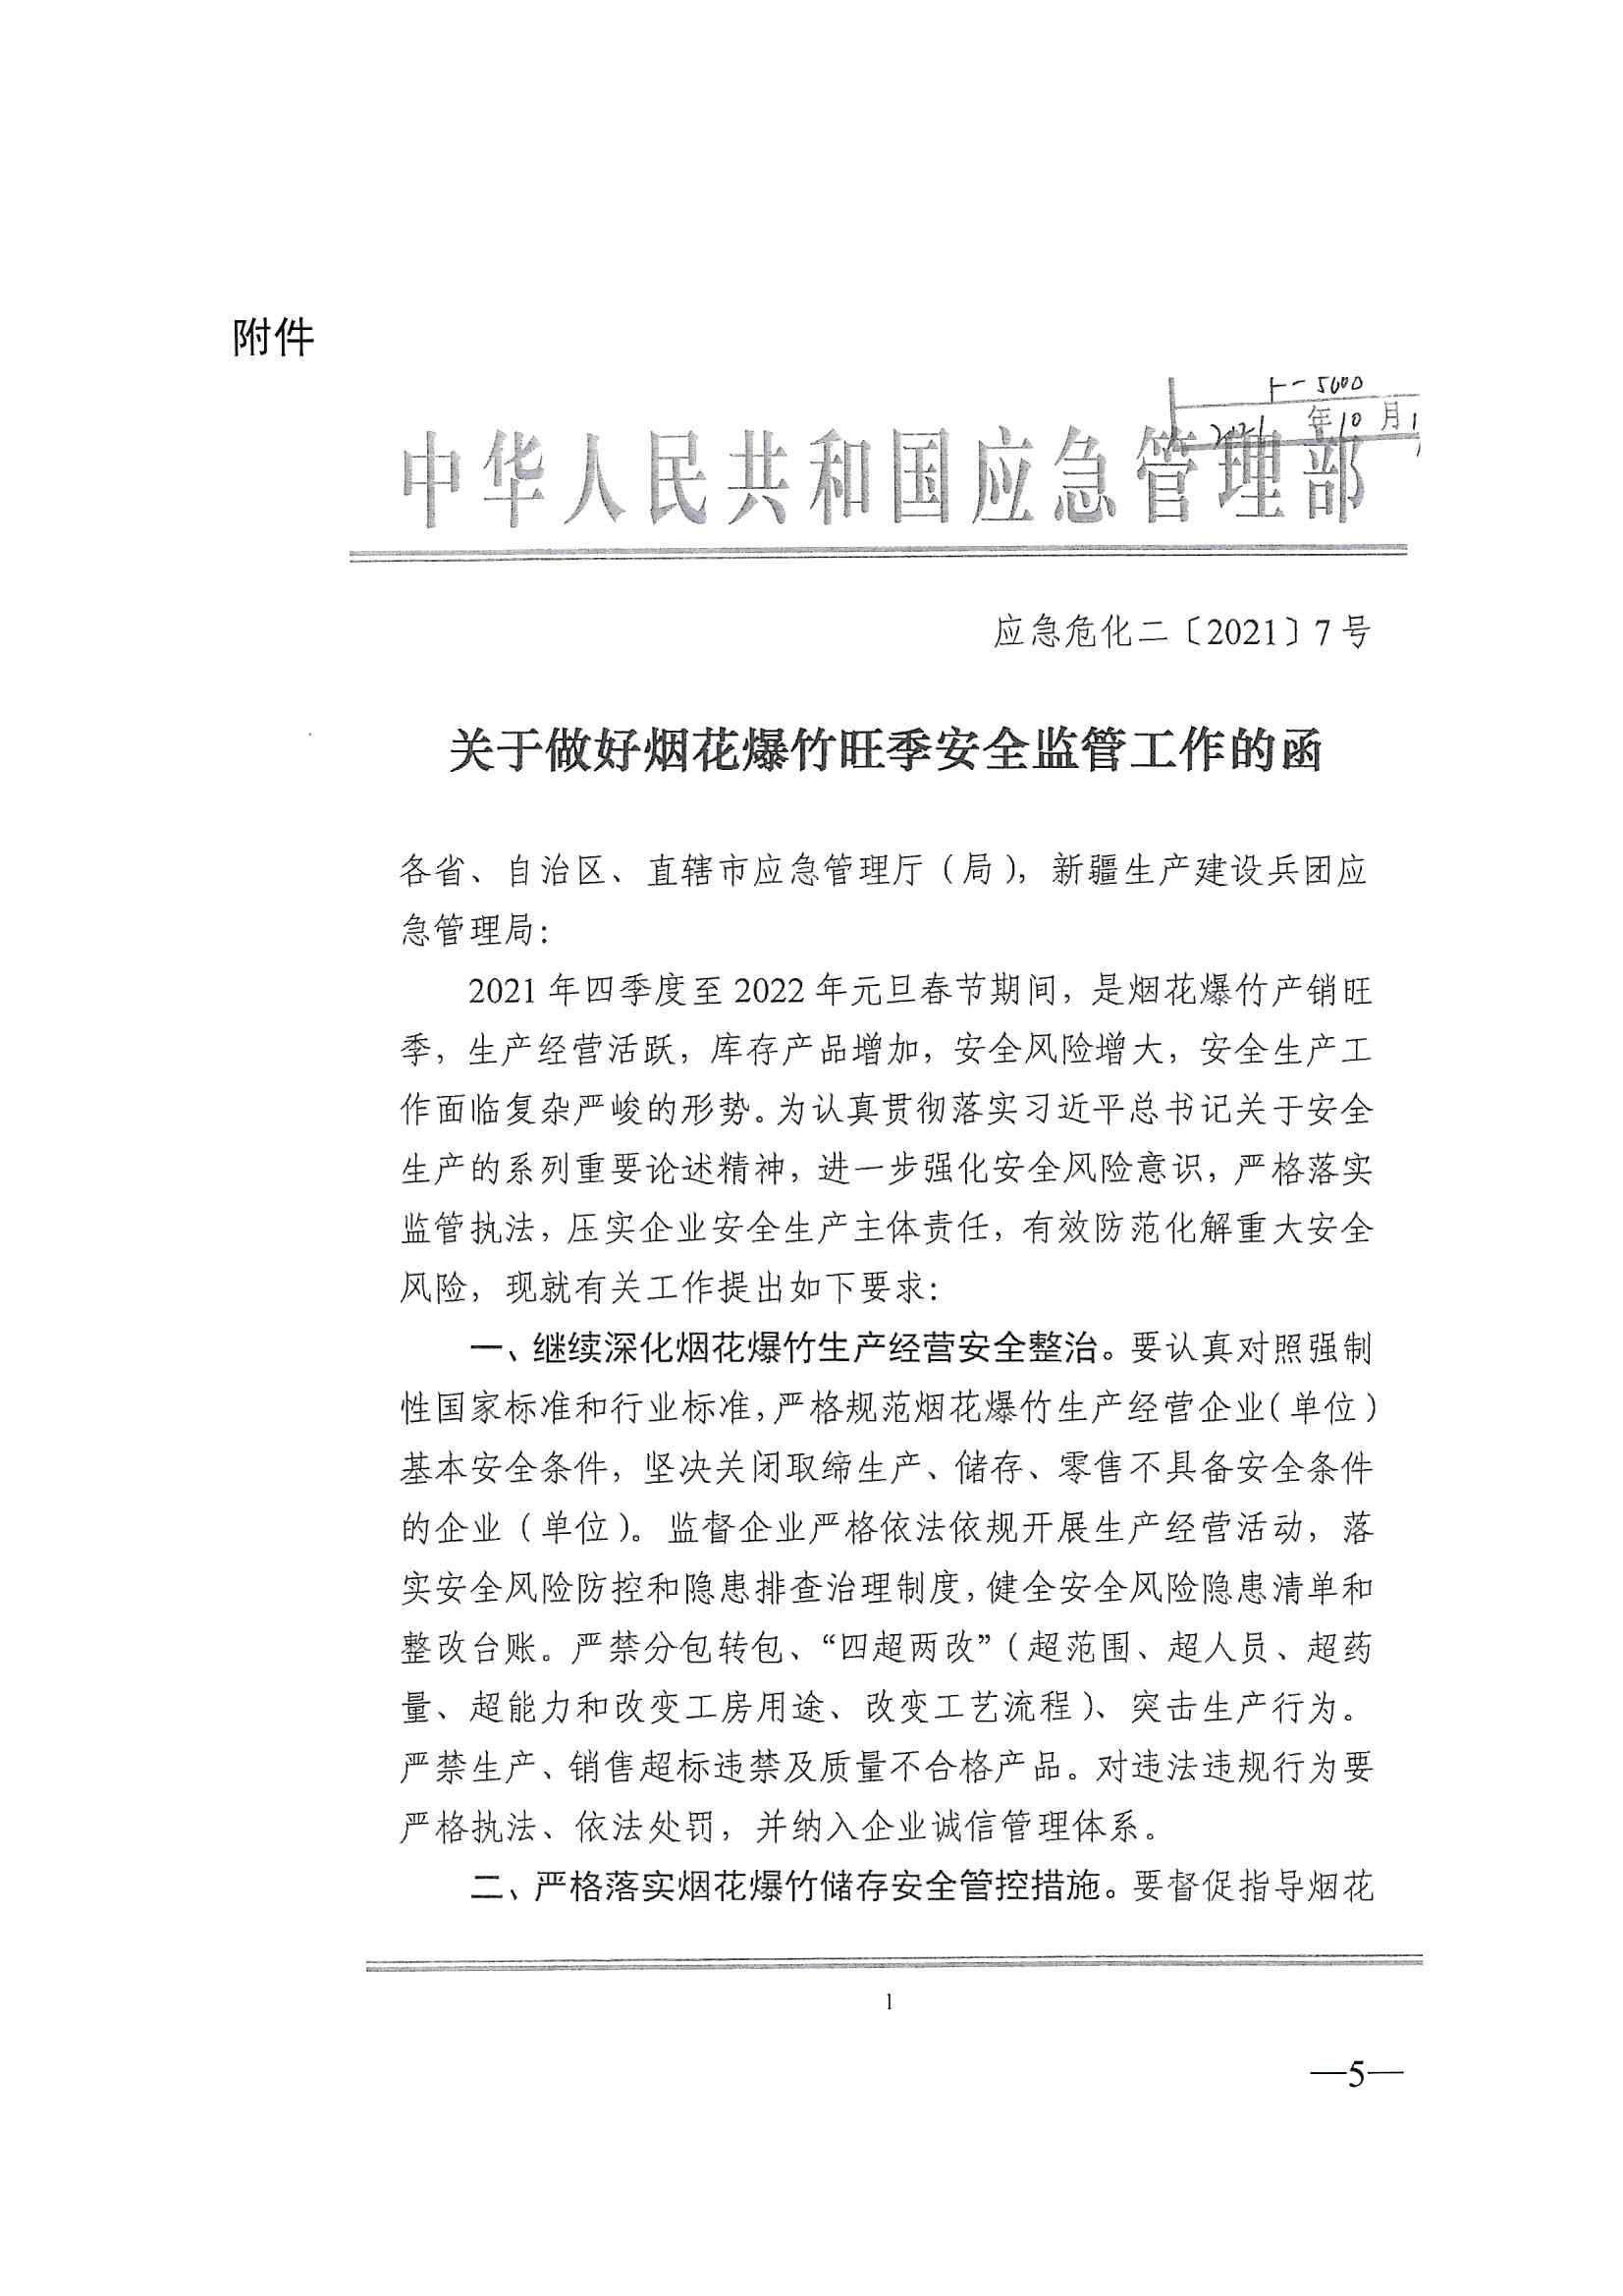 2021-川应急函〔2021〕419号《四川省应急管理厅关于加强烟花爆竹旺季安全监管工作的通知》_5